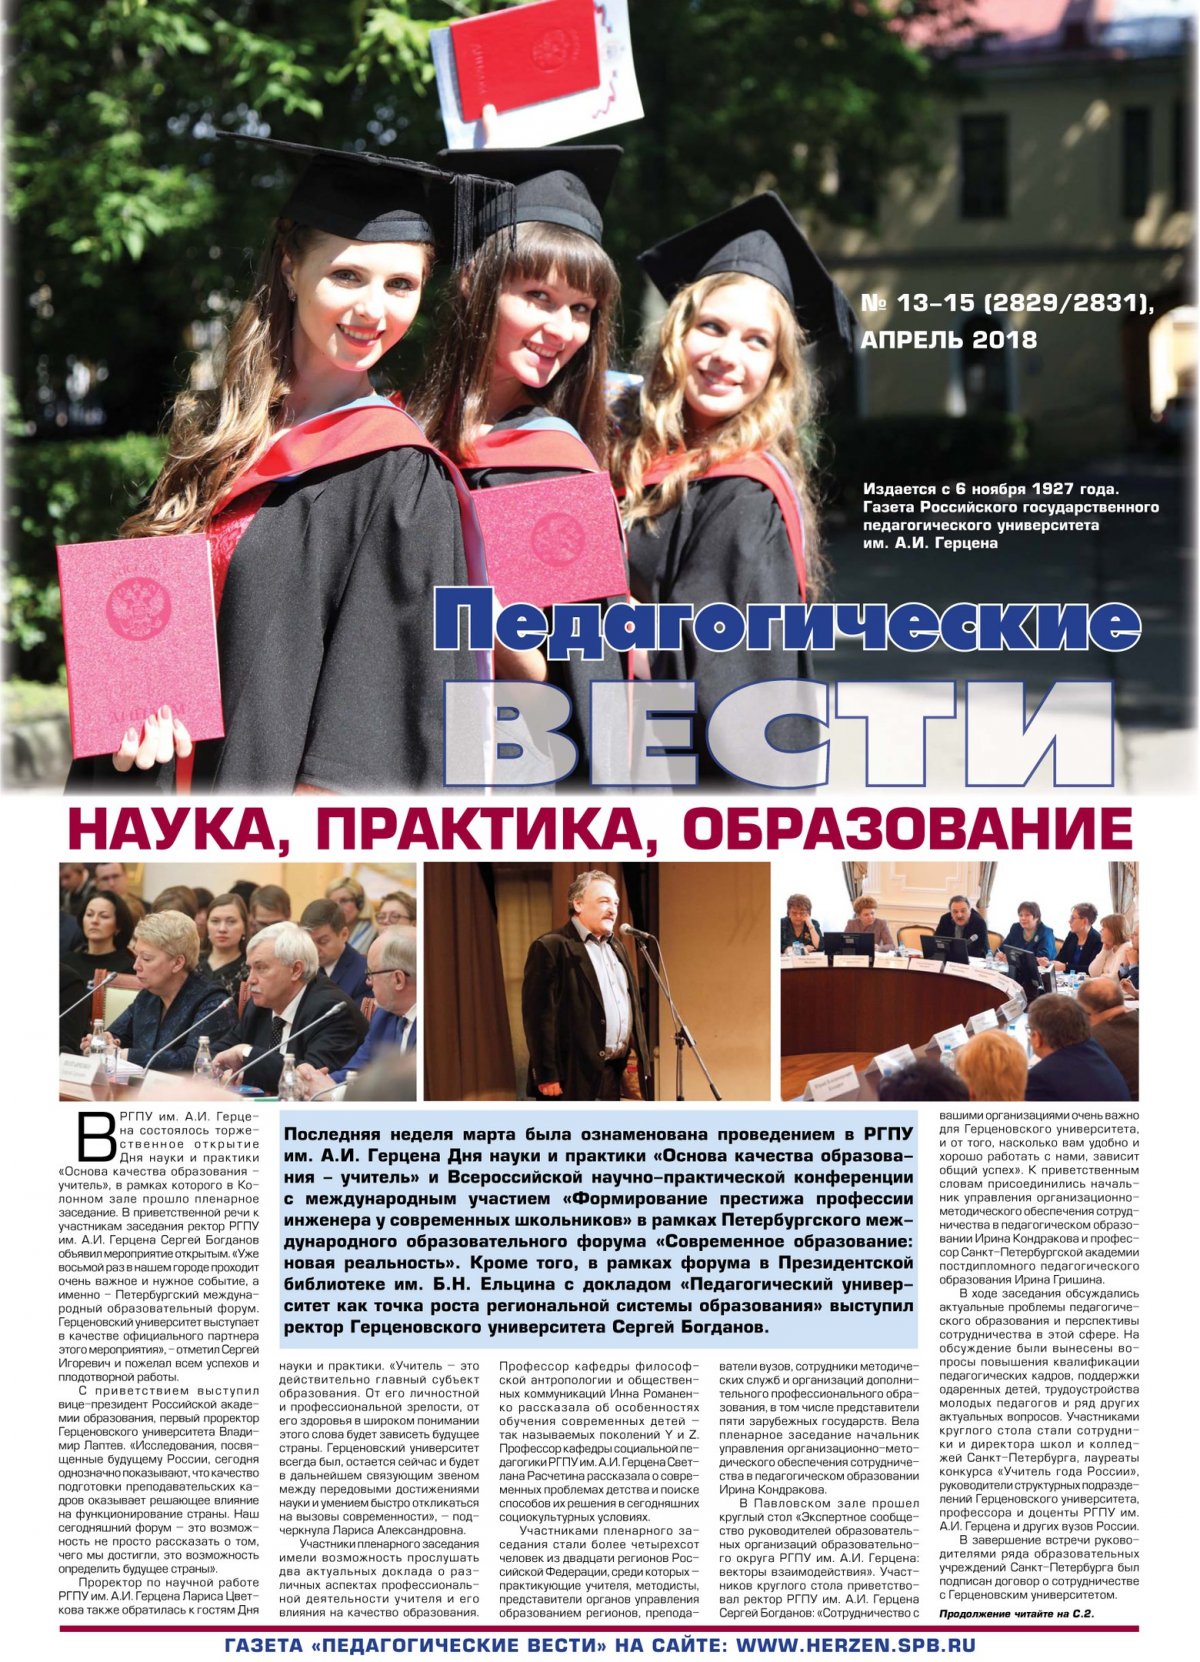 Читайте новый номер газеты Герценовского университета «Педагогические вести» 📖